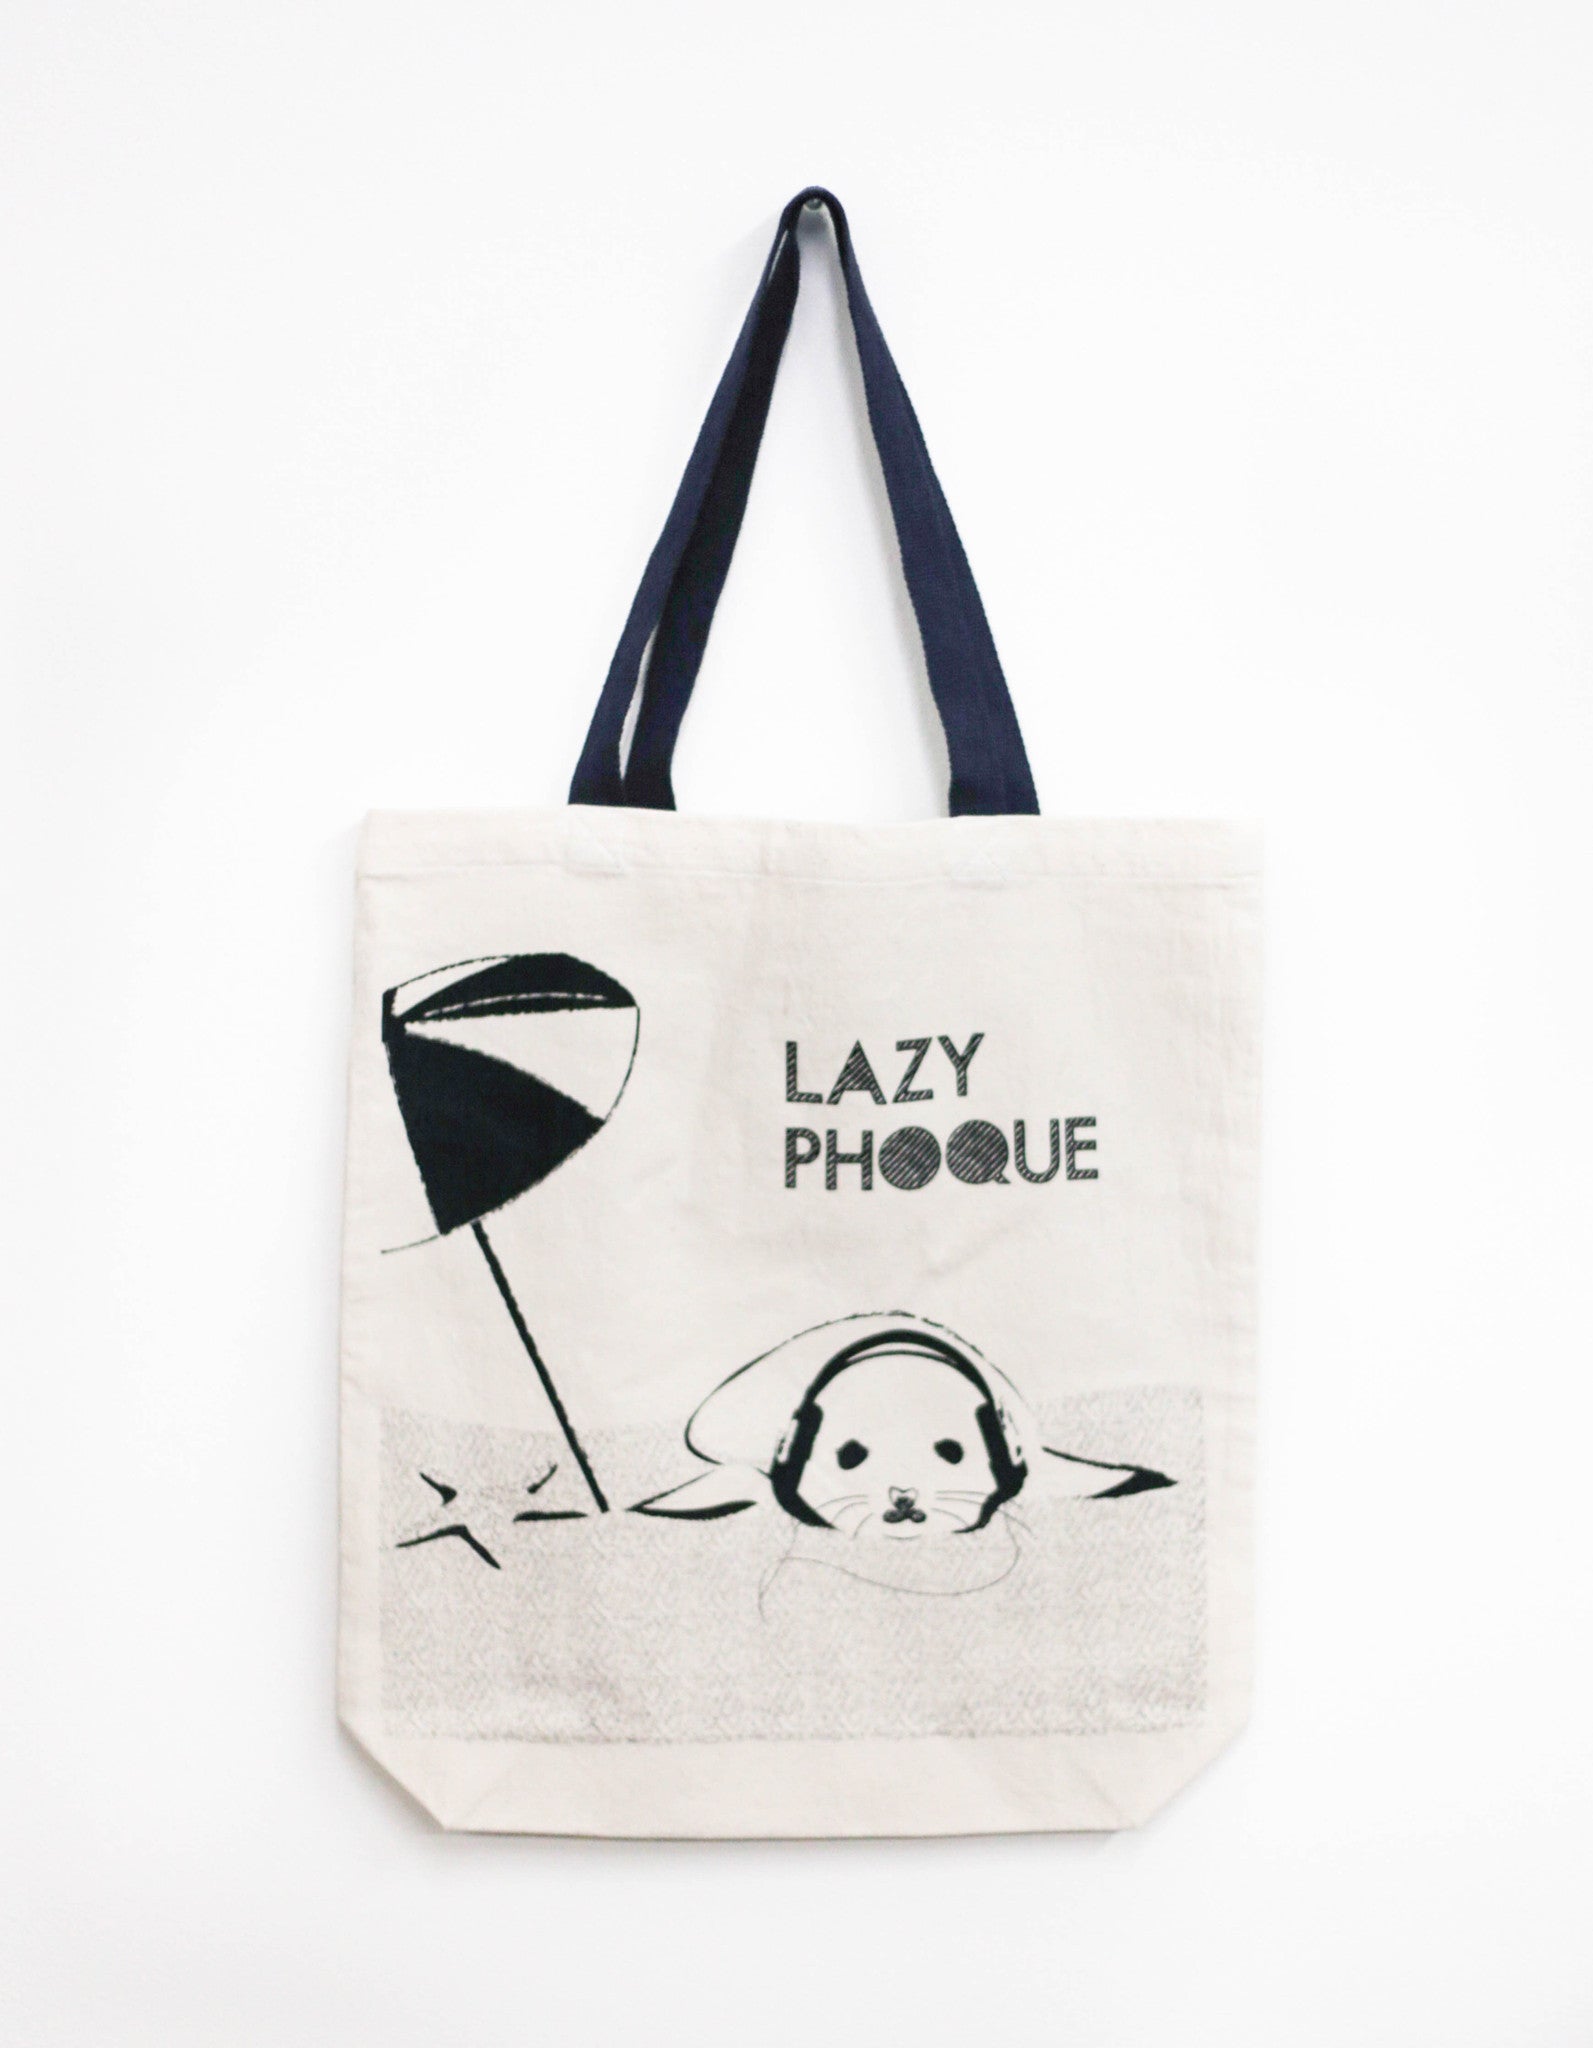 Lazy "Phoque" Tote